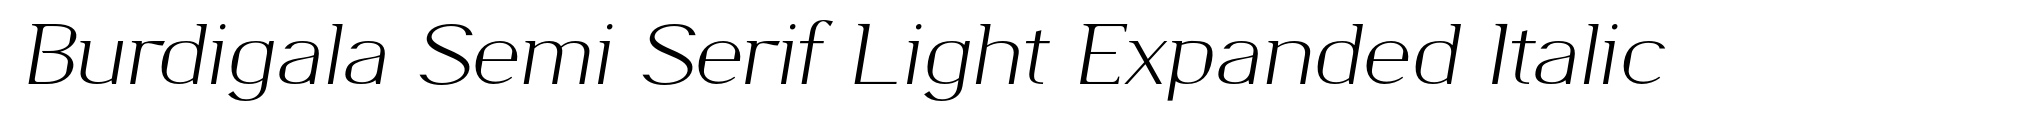 Burdigala Semi Serif Light Expanded Italic image